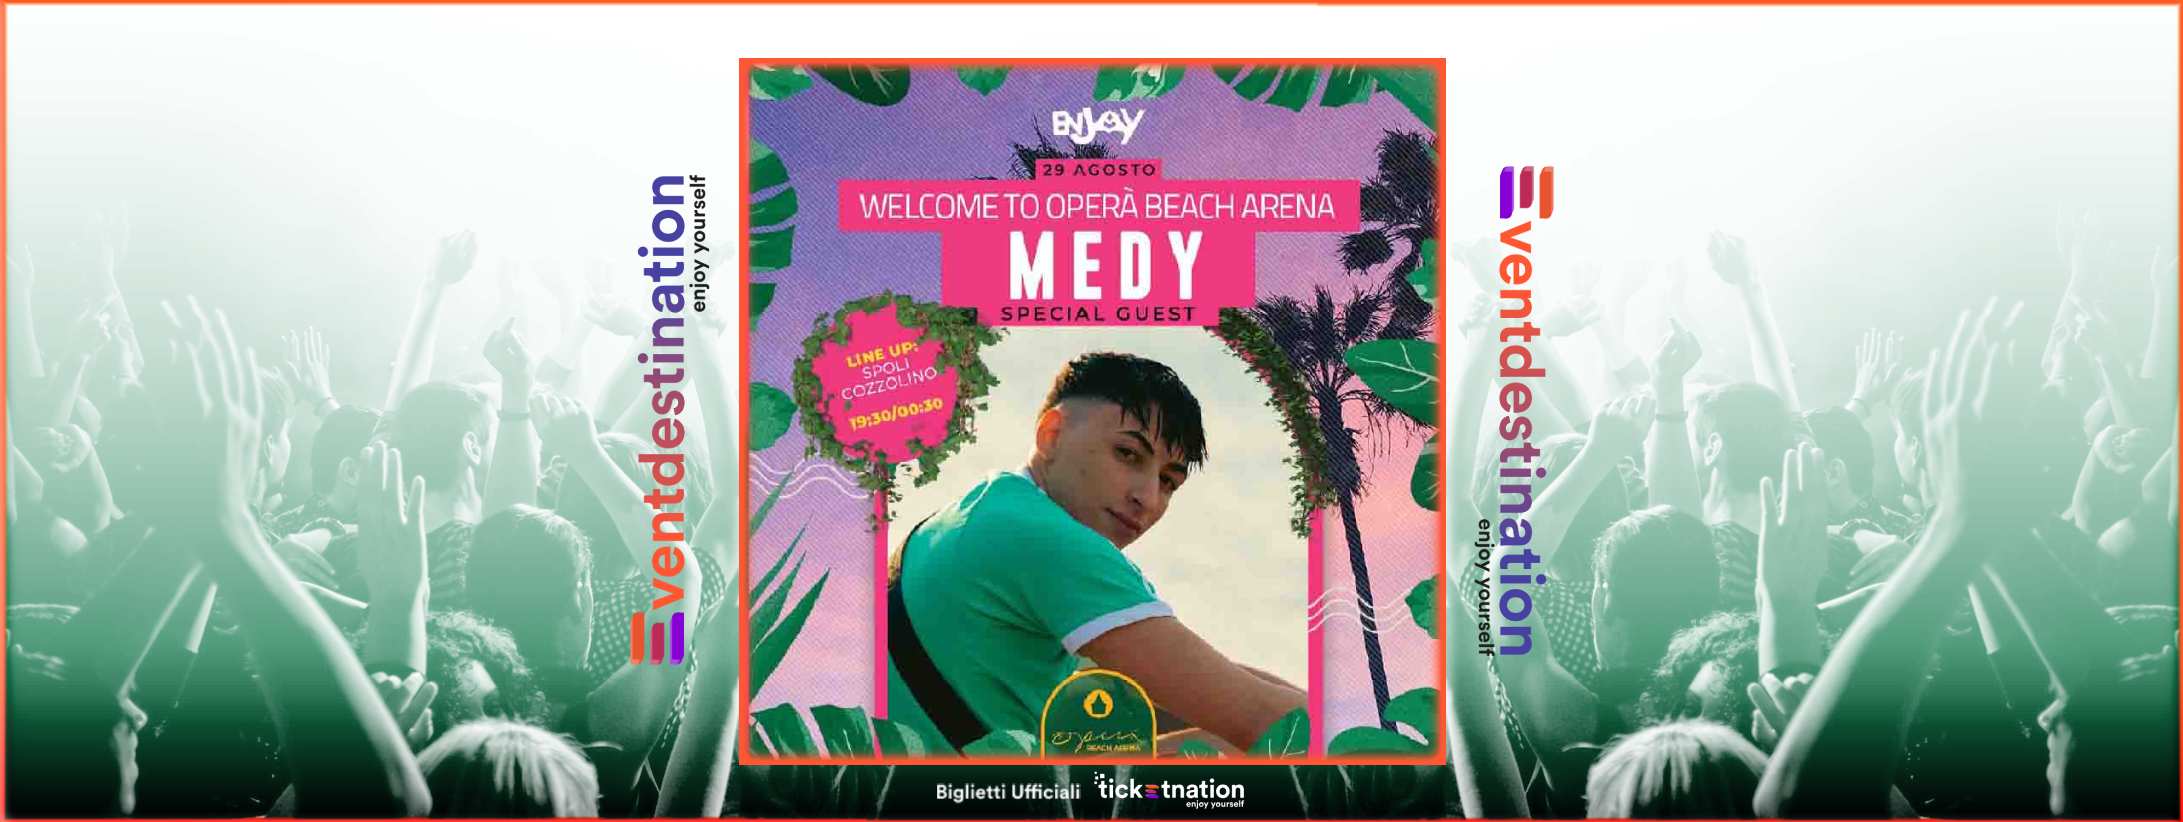 Medy @ Opera Beach Arena 29 agosto 2022